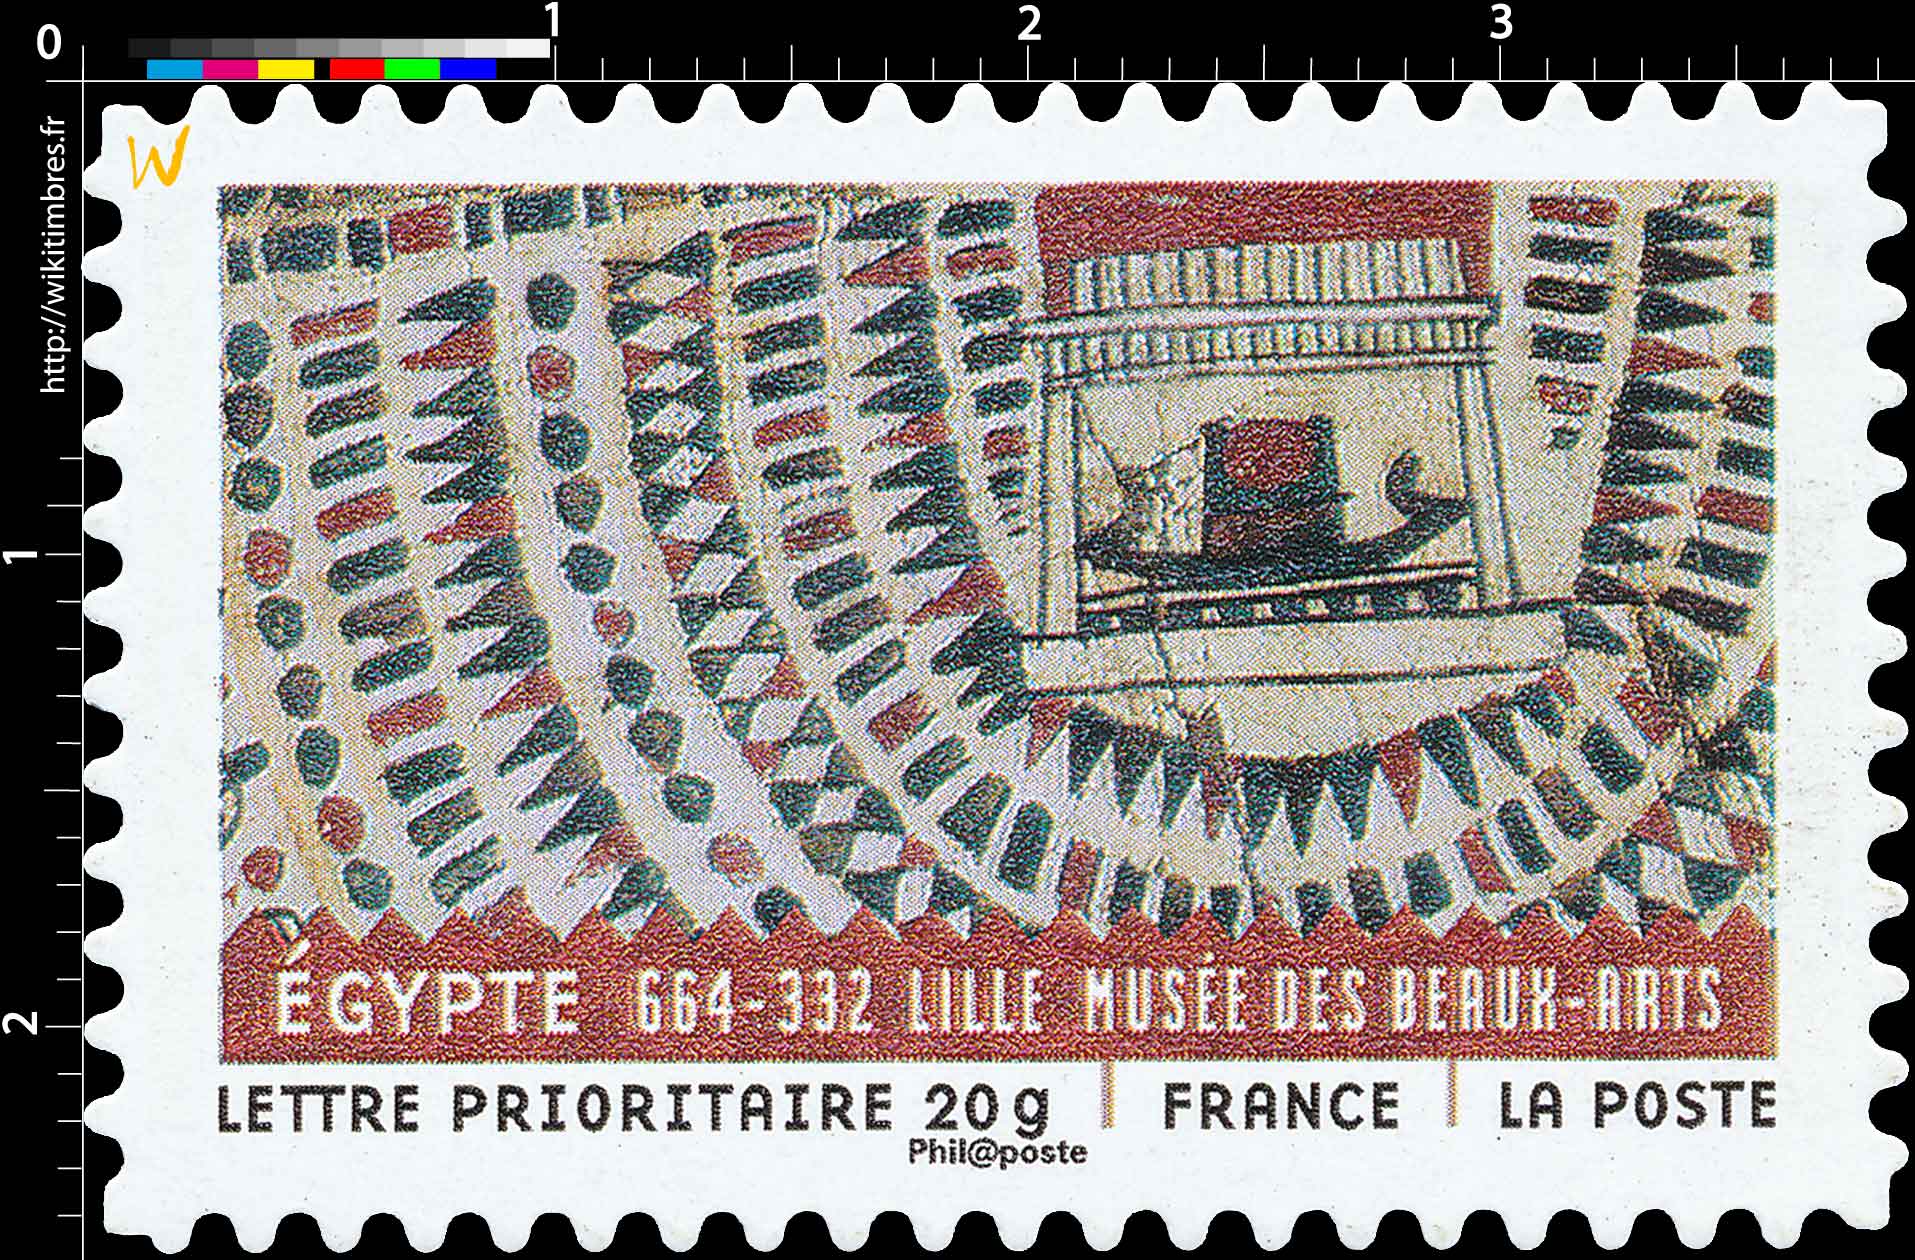 ÉGYPTE 664-332 LILLE MUSÉE DES BEAUX-ARTS